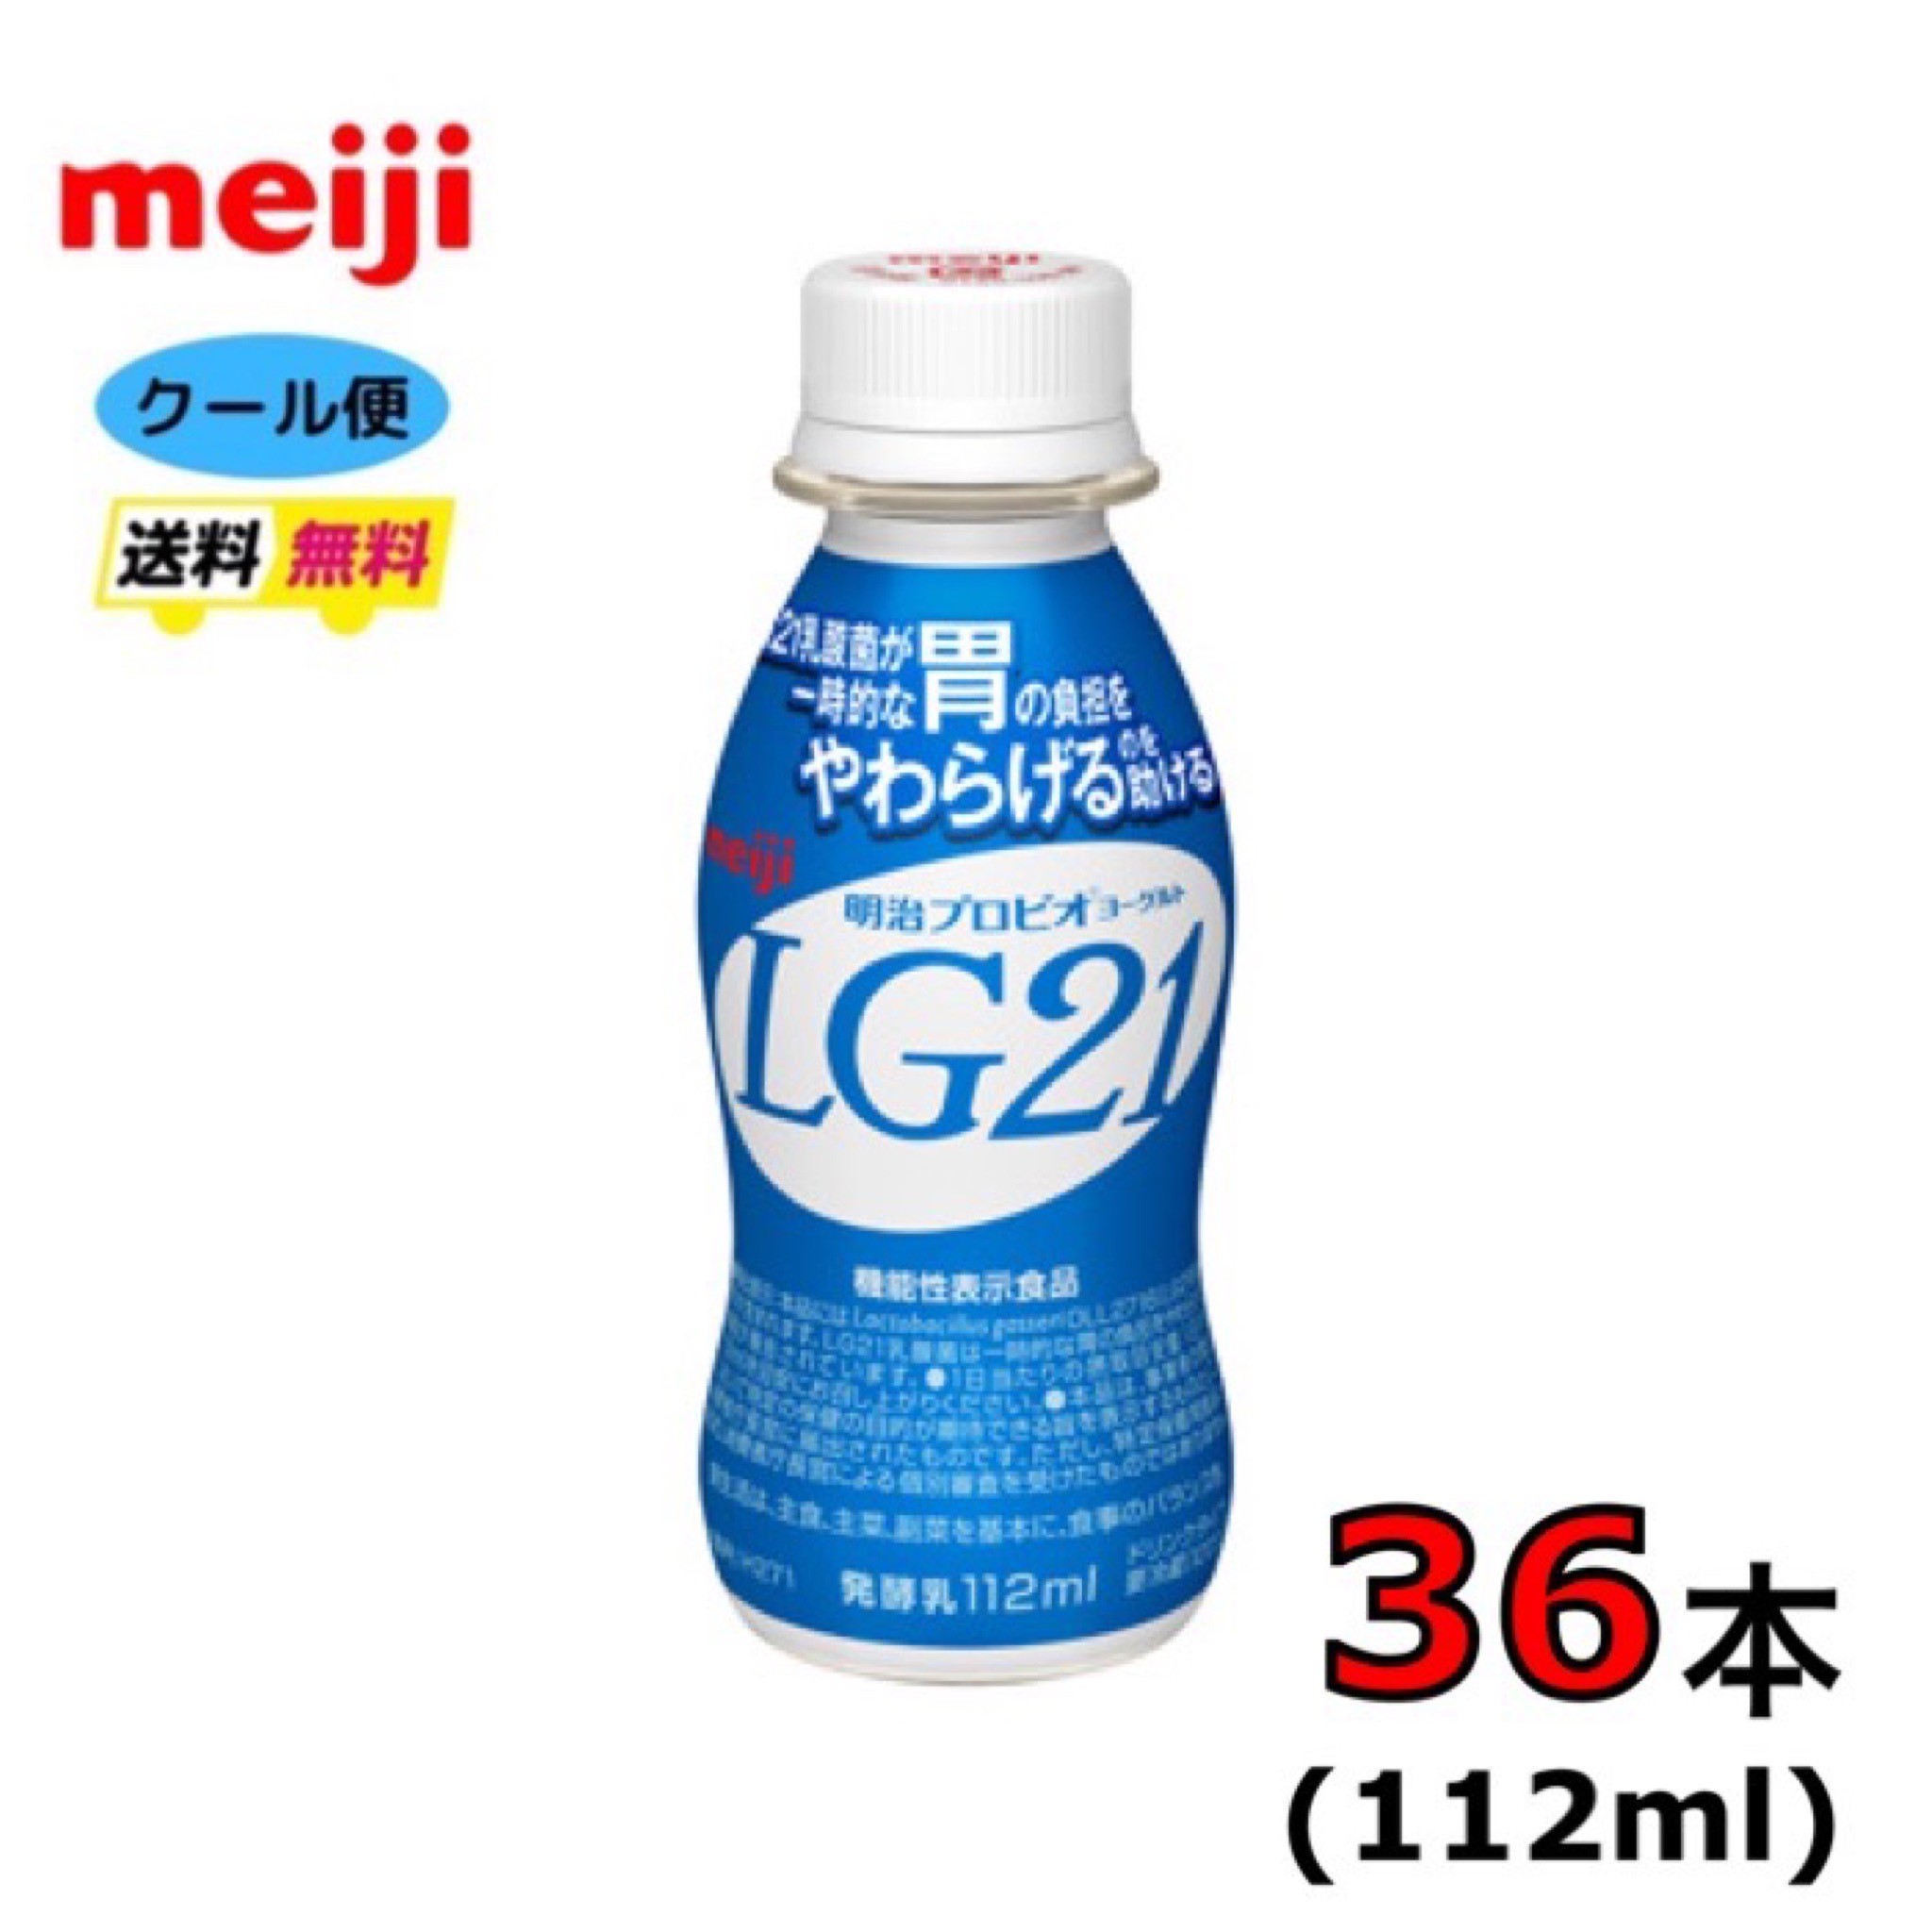 明治　LG21ヨーグルト　ペットボトル　112ml 内容量 112ml　 原材料 乳製品、ぶどう糖果糖液糖、砂糖／安定剤（ペクチン）、茶抽出物、香料 栄養成分 1本(112ml)当たり:エネルギー78kcal たんぱく質 3.5g 脂質 0.66g 炭水化物14.6g 食塩相当量 0.12g カルシウム129mg　糖類14.4g 賞味期限 約2週間（11〜14日） 保存方法 到着次第冷蔵保存してください。 送料 北海道の方は、3980円未満の場合、1000円上乗せとなります。ご理解よろしくお願い致します。